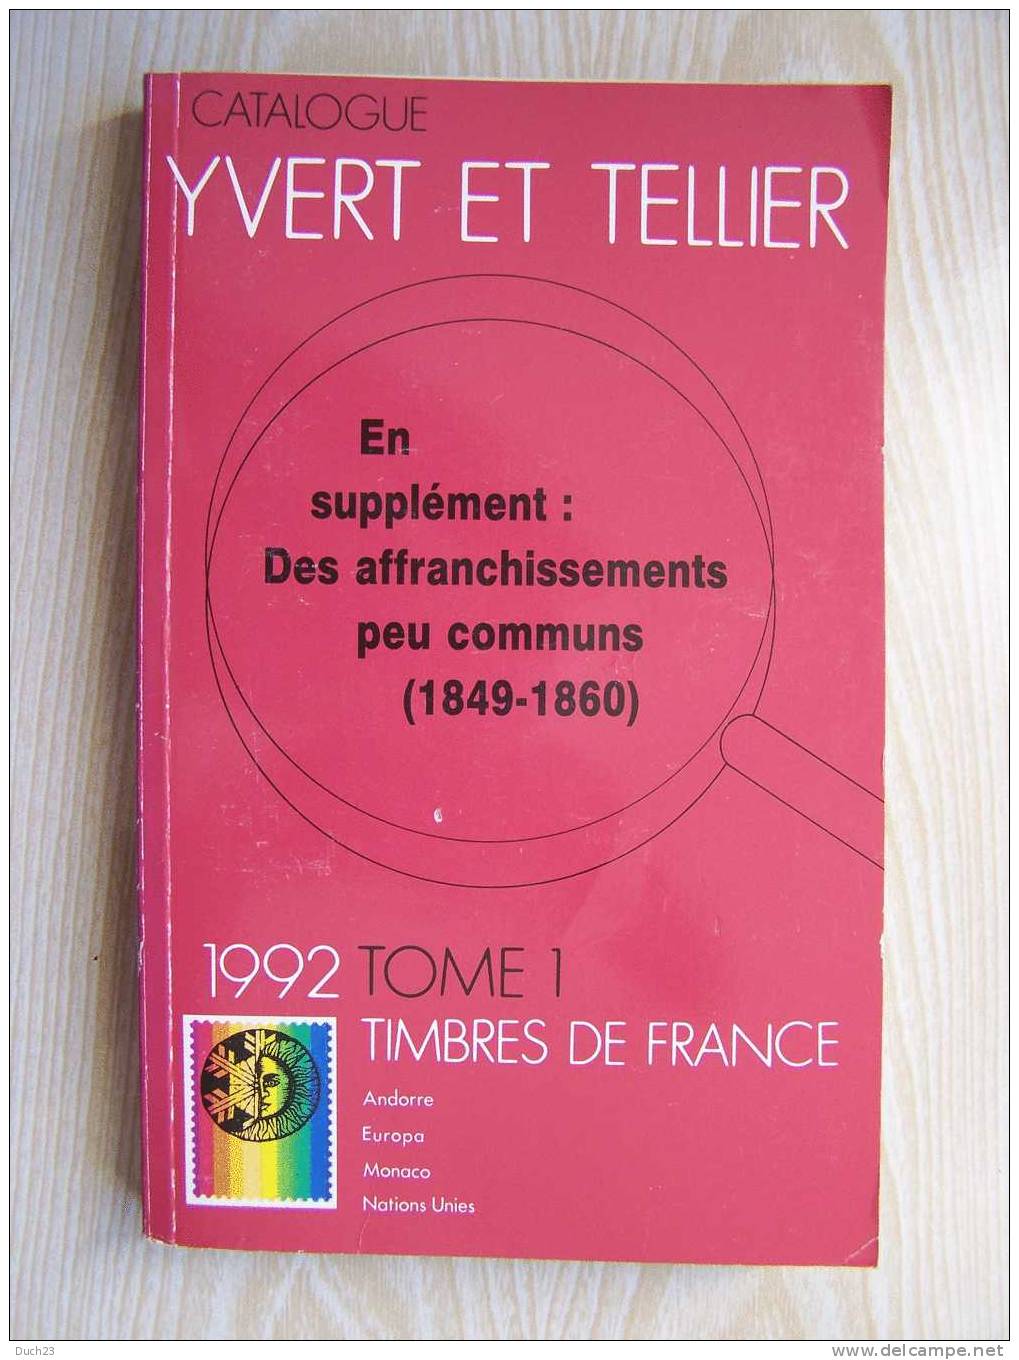 CATALOGUE DE COTATION YVERT ET TELLIER ANNEE 1992 TOME 1 TRES BON ETAT   REF CD - Frankrijk